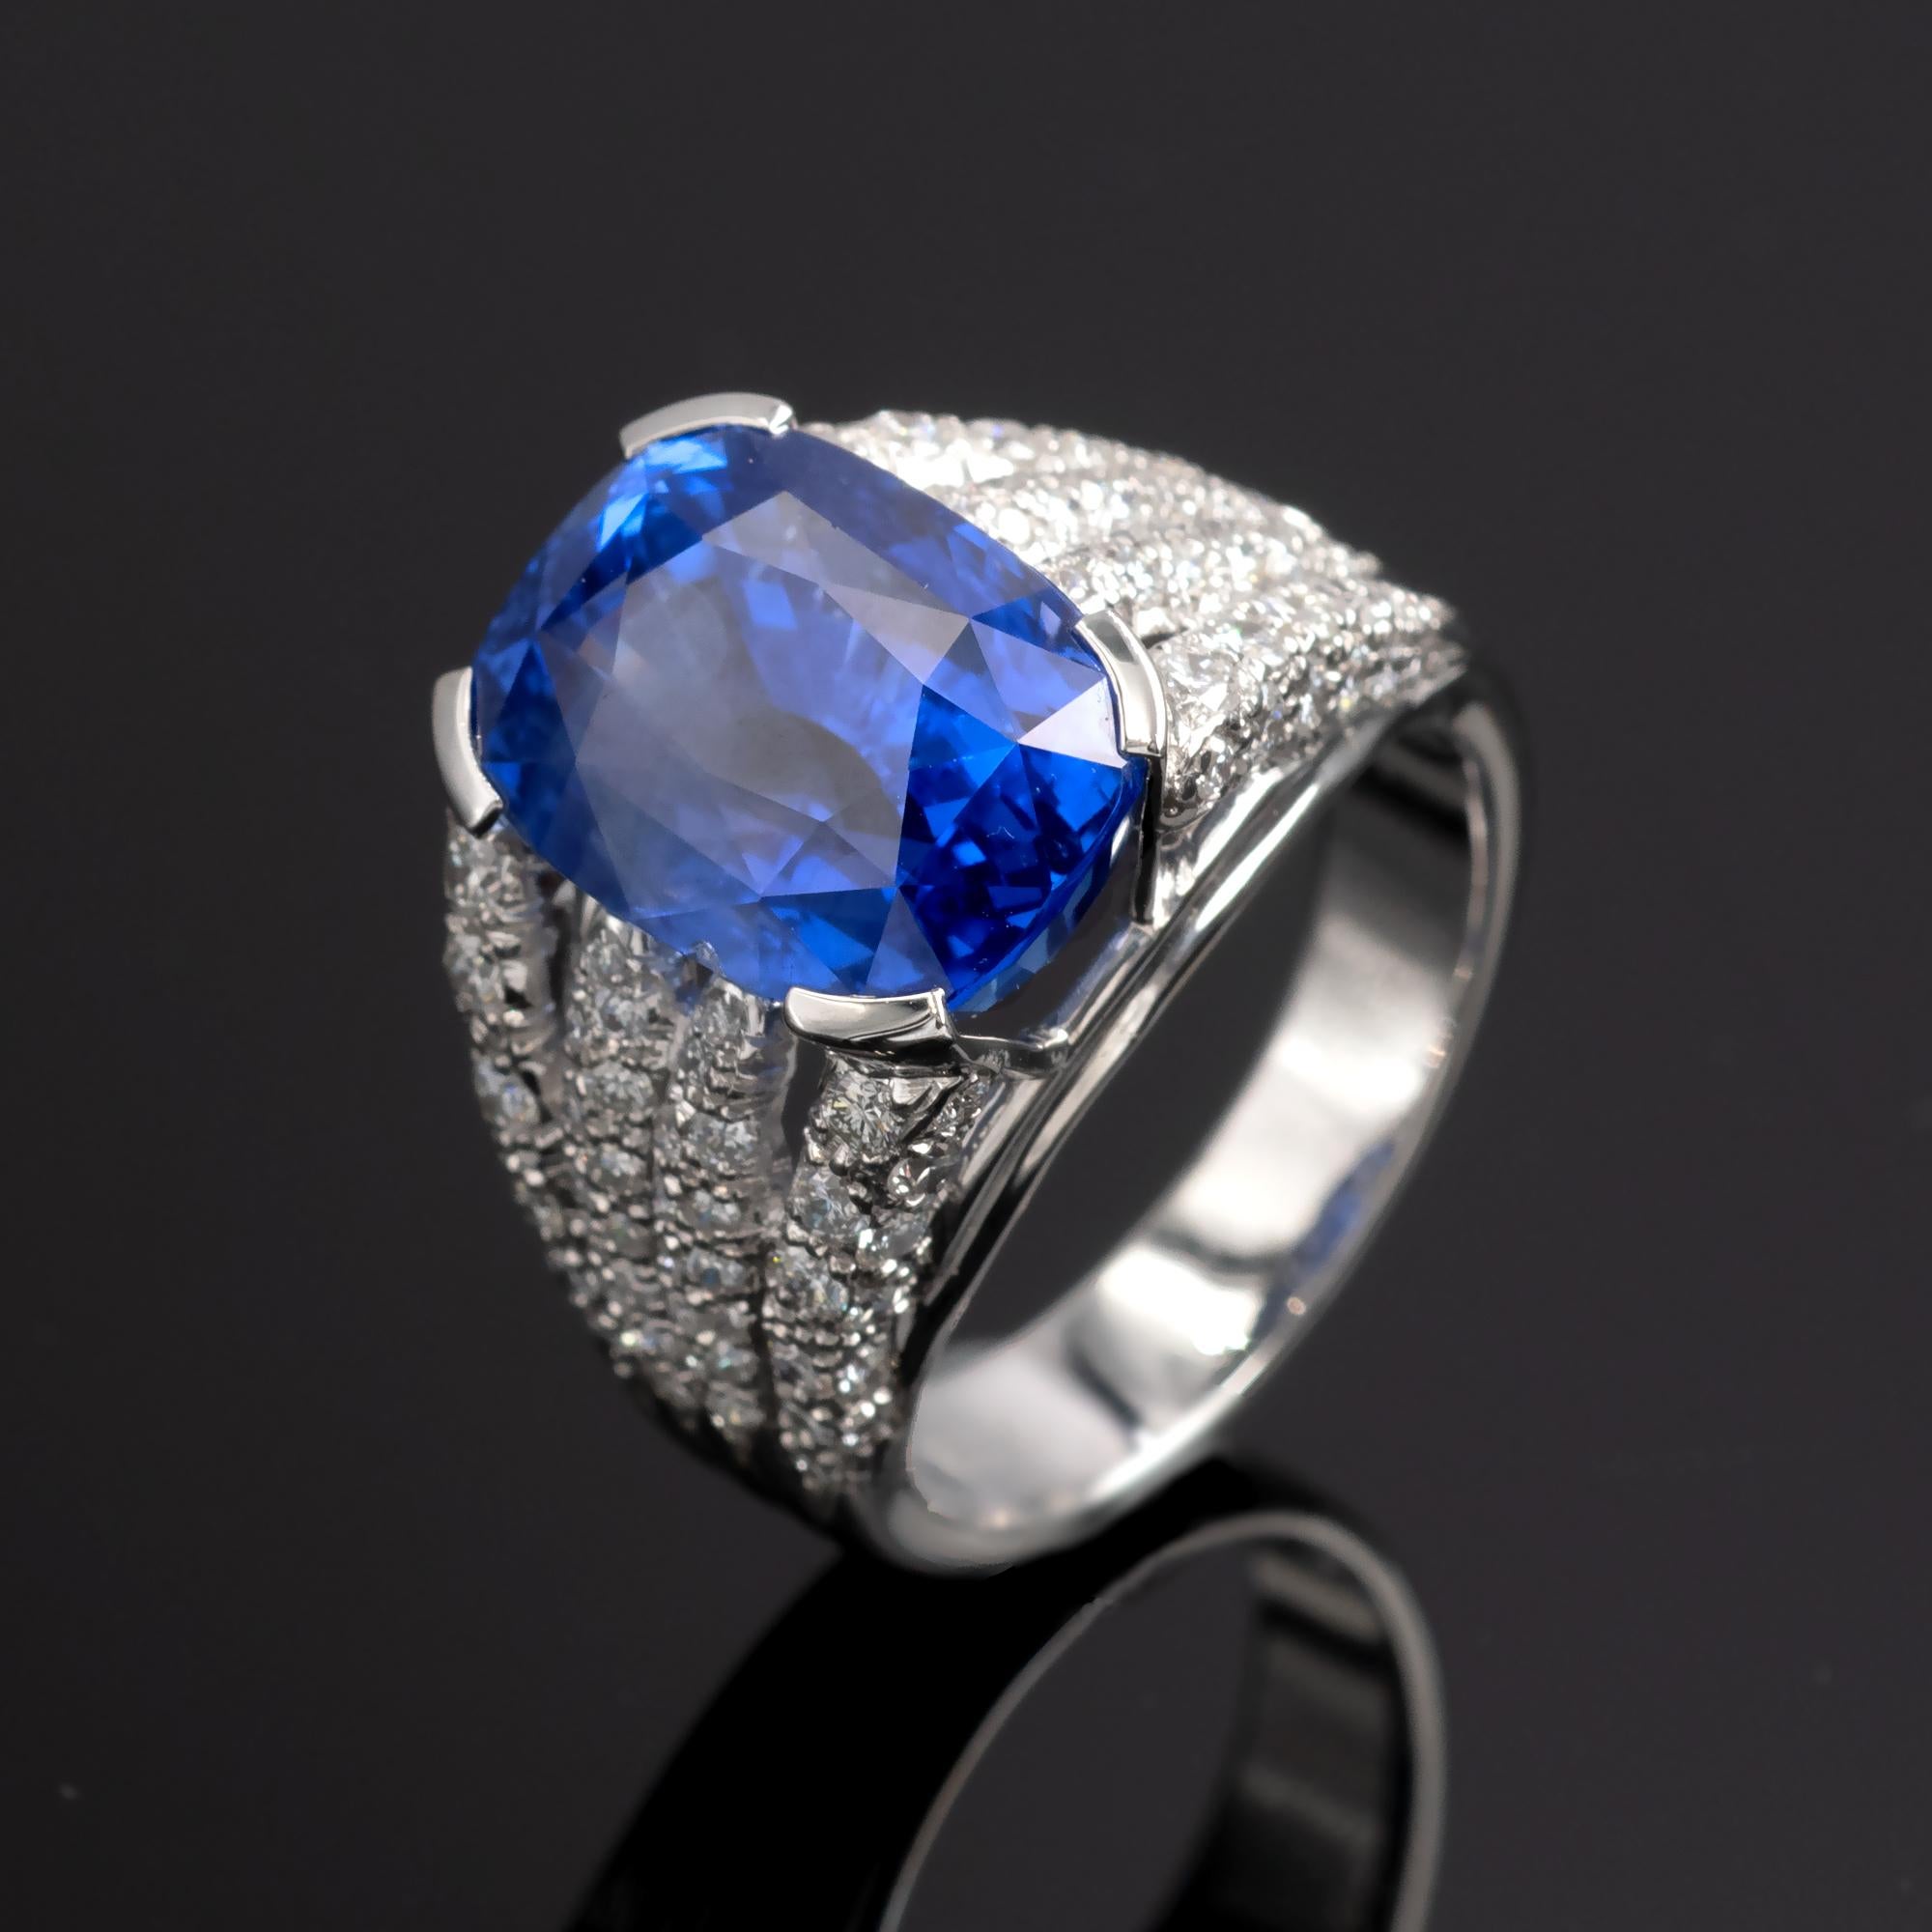 Ein lebhafter, intensiv blauer Saphir auf einem einzigartigen Ring aus 18 Karat Weißgold und Diamanten. 
Der Saphir wird mit einem GRS-Edelsteinbericht geliefert, der besagt, dass es sich um einen natürlichen, unerhitzten Saphir aus Sri Lanka